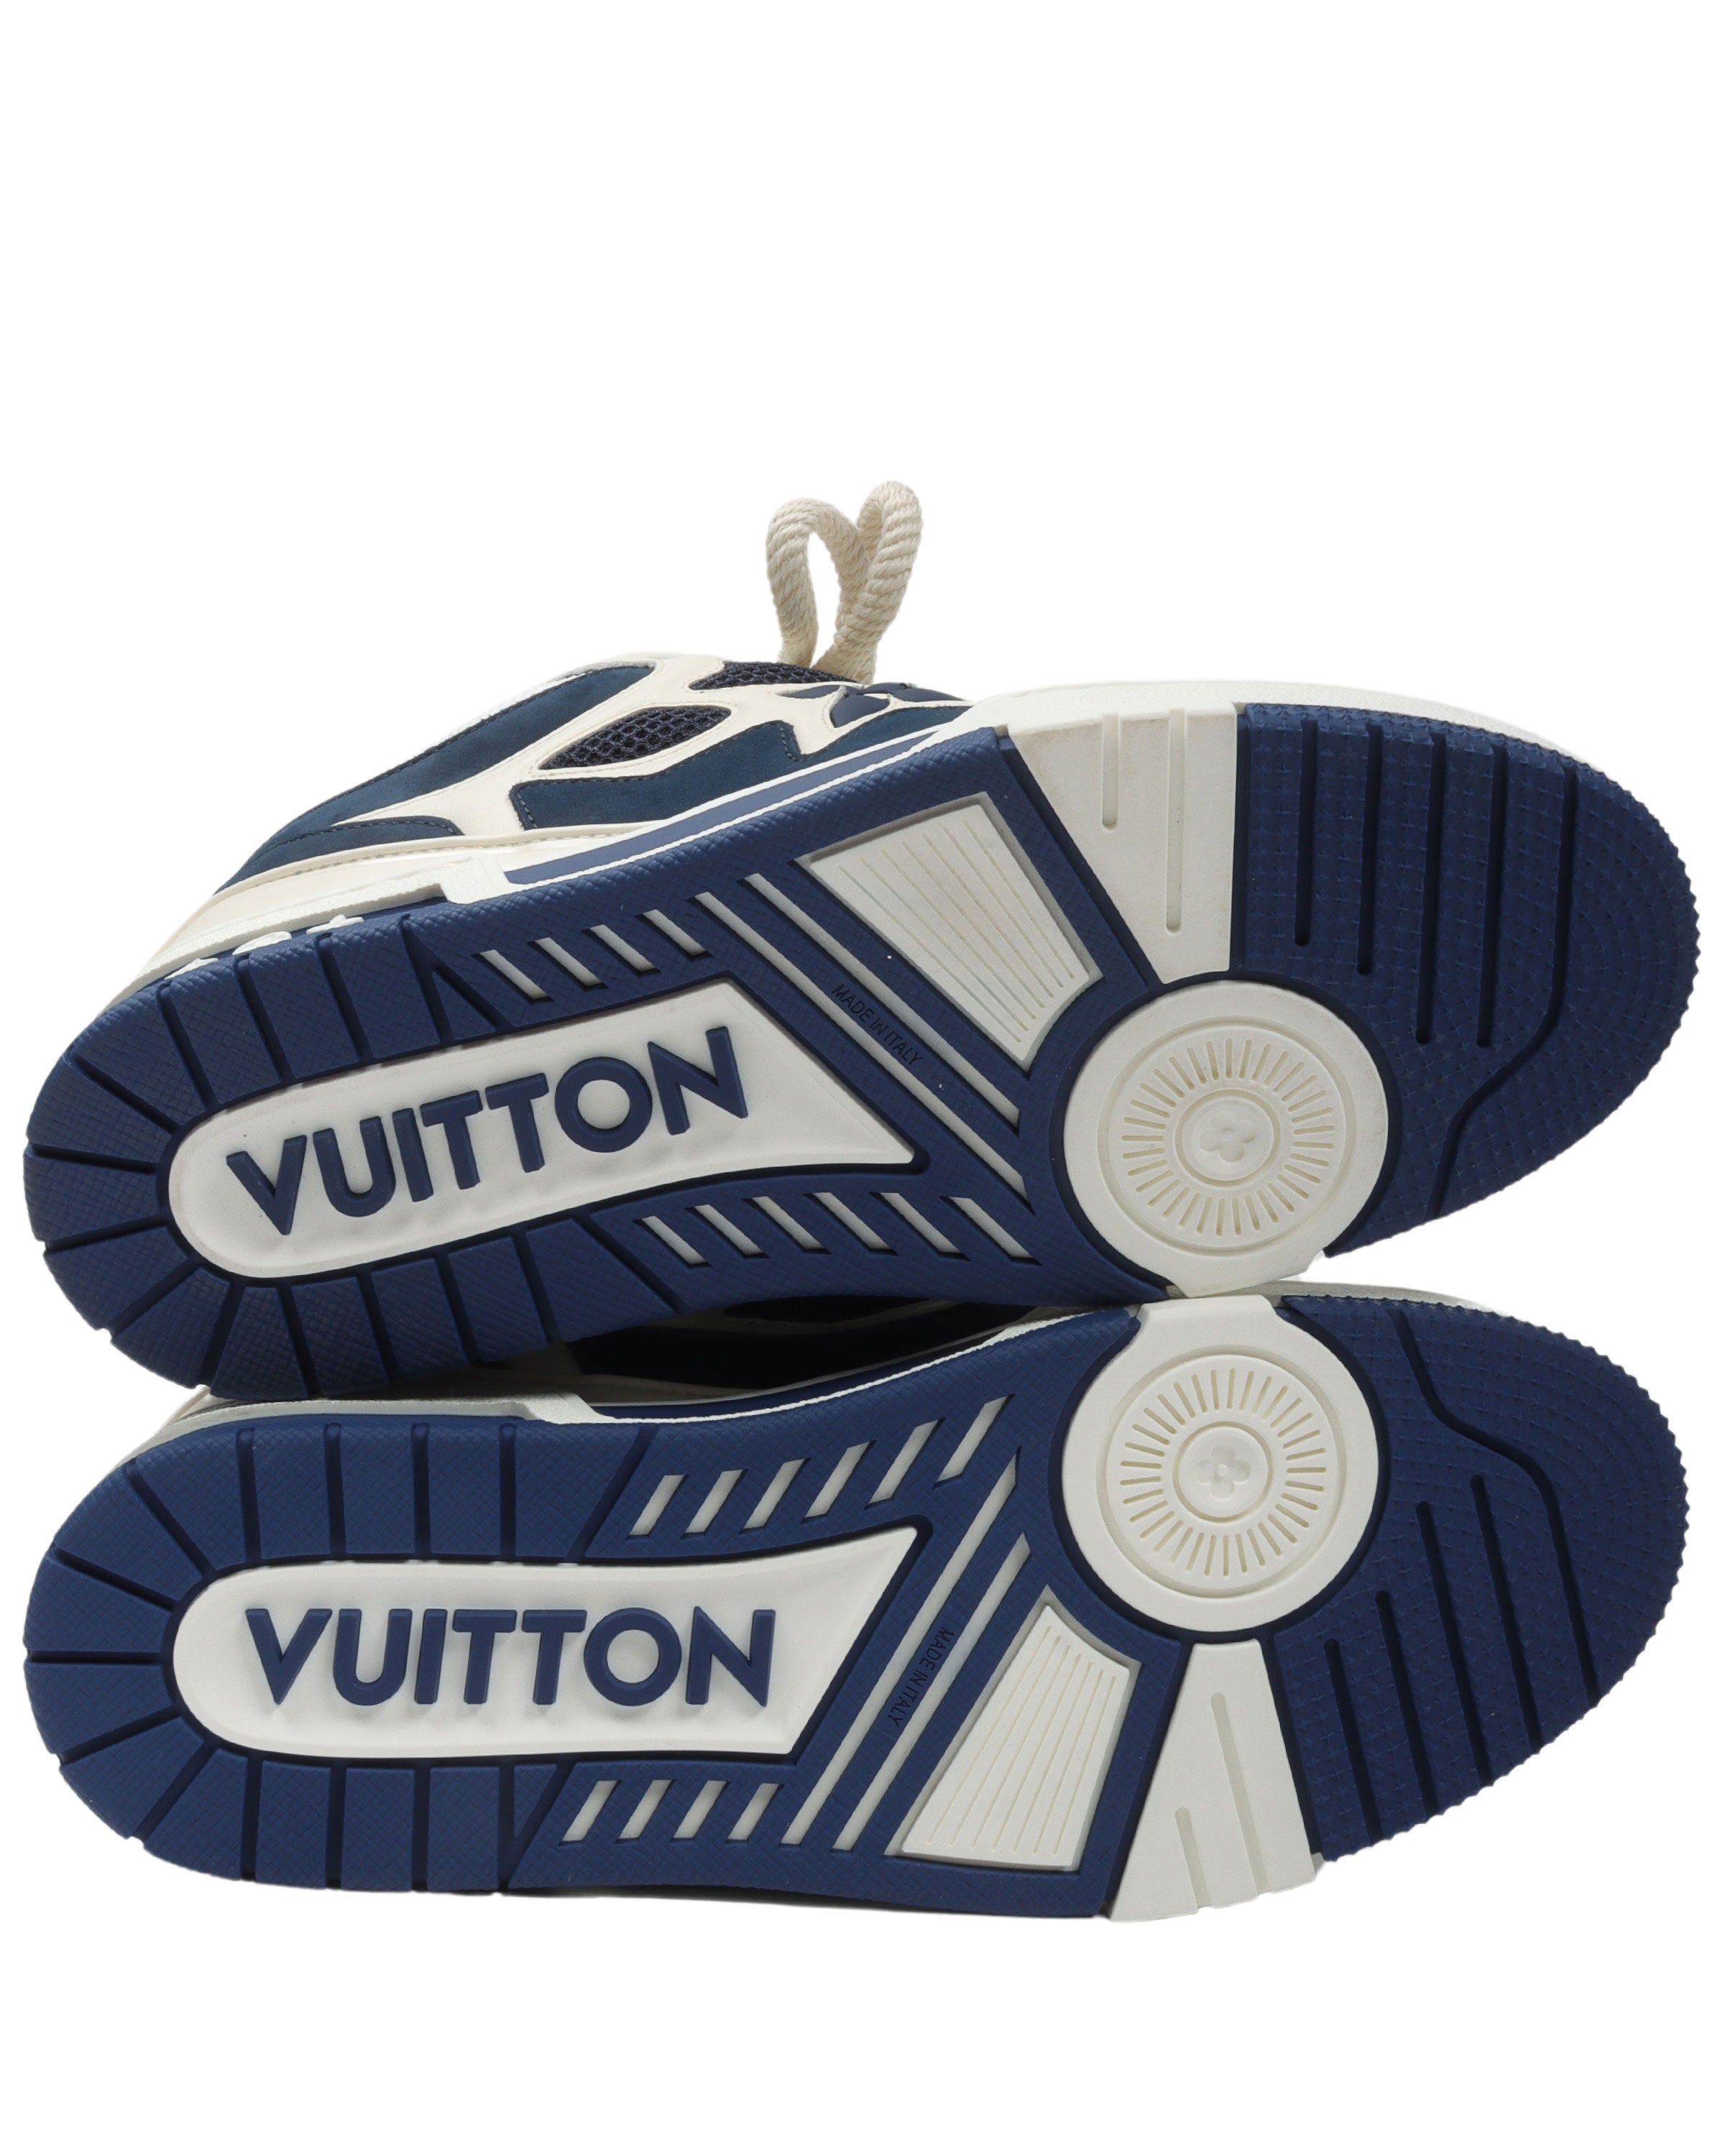 Louis Vuitton, Shoes, Louis Vuitton Snow Boot Size Us 9